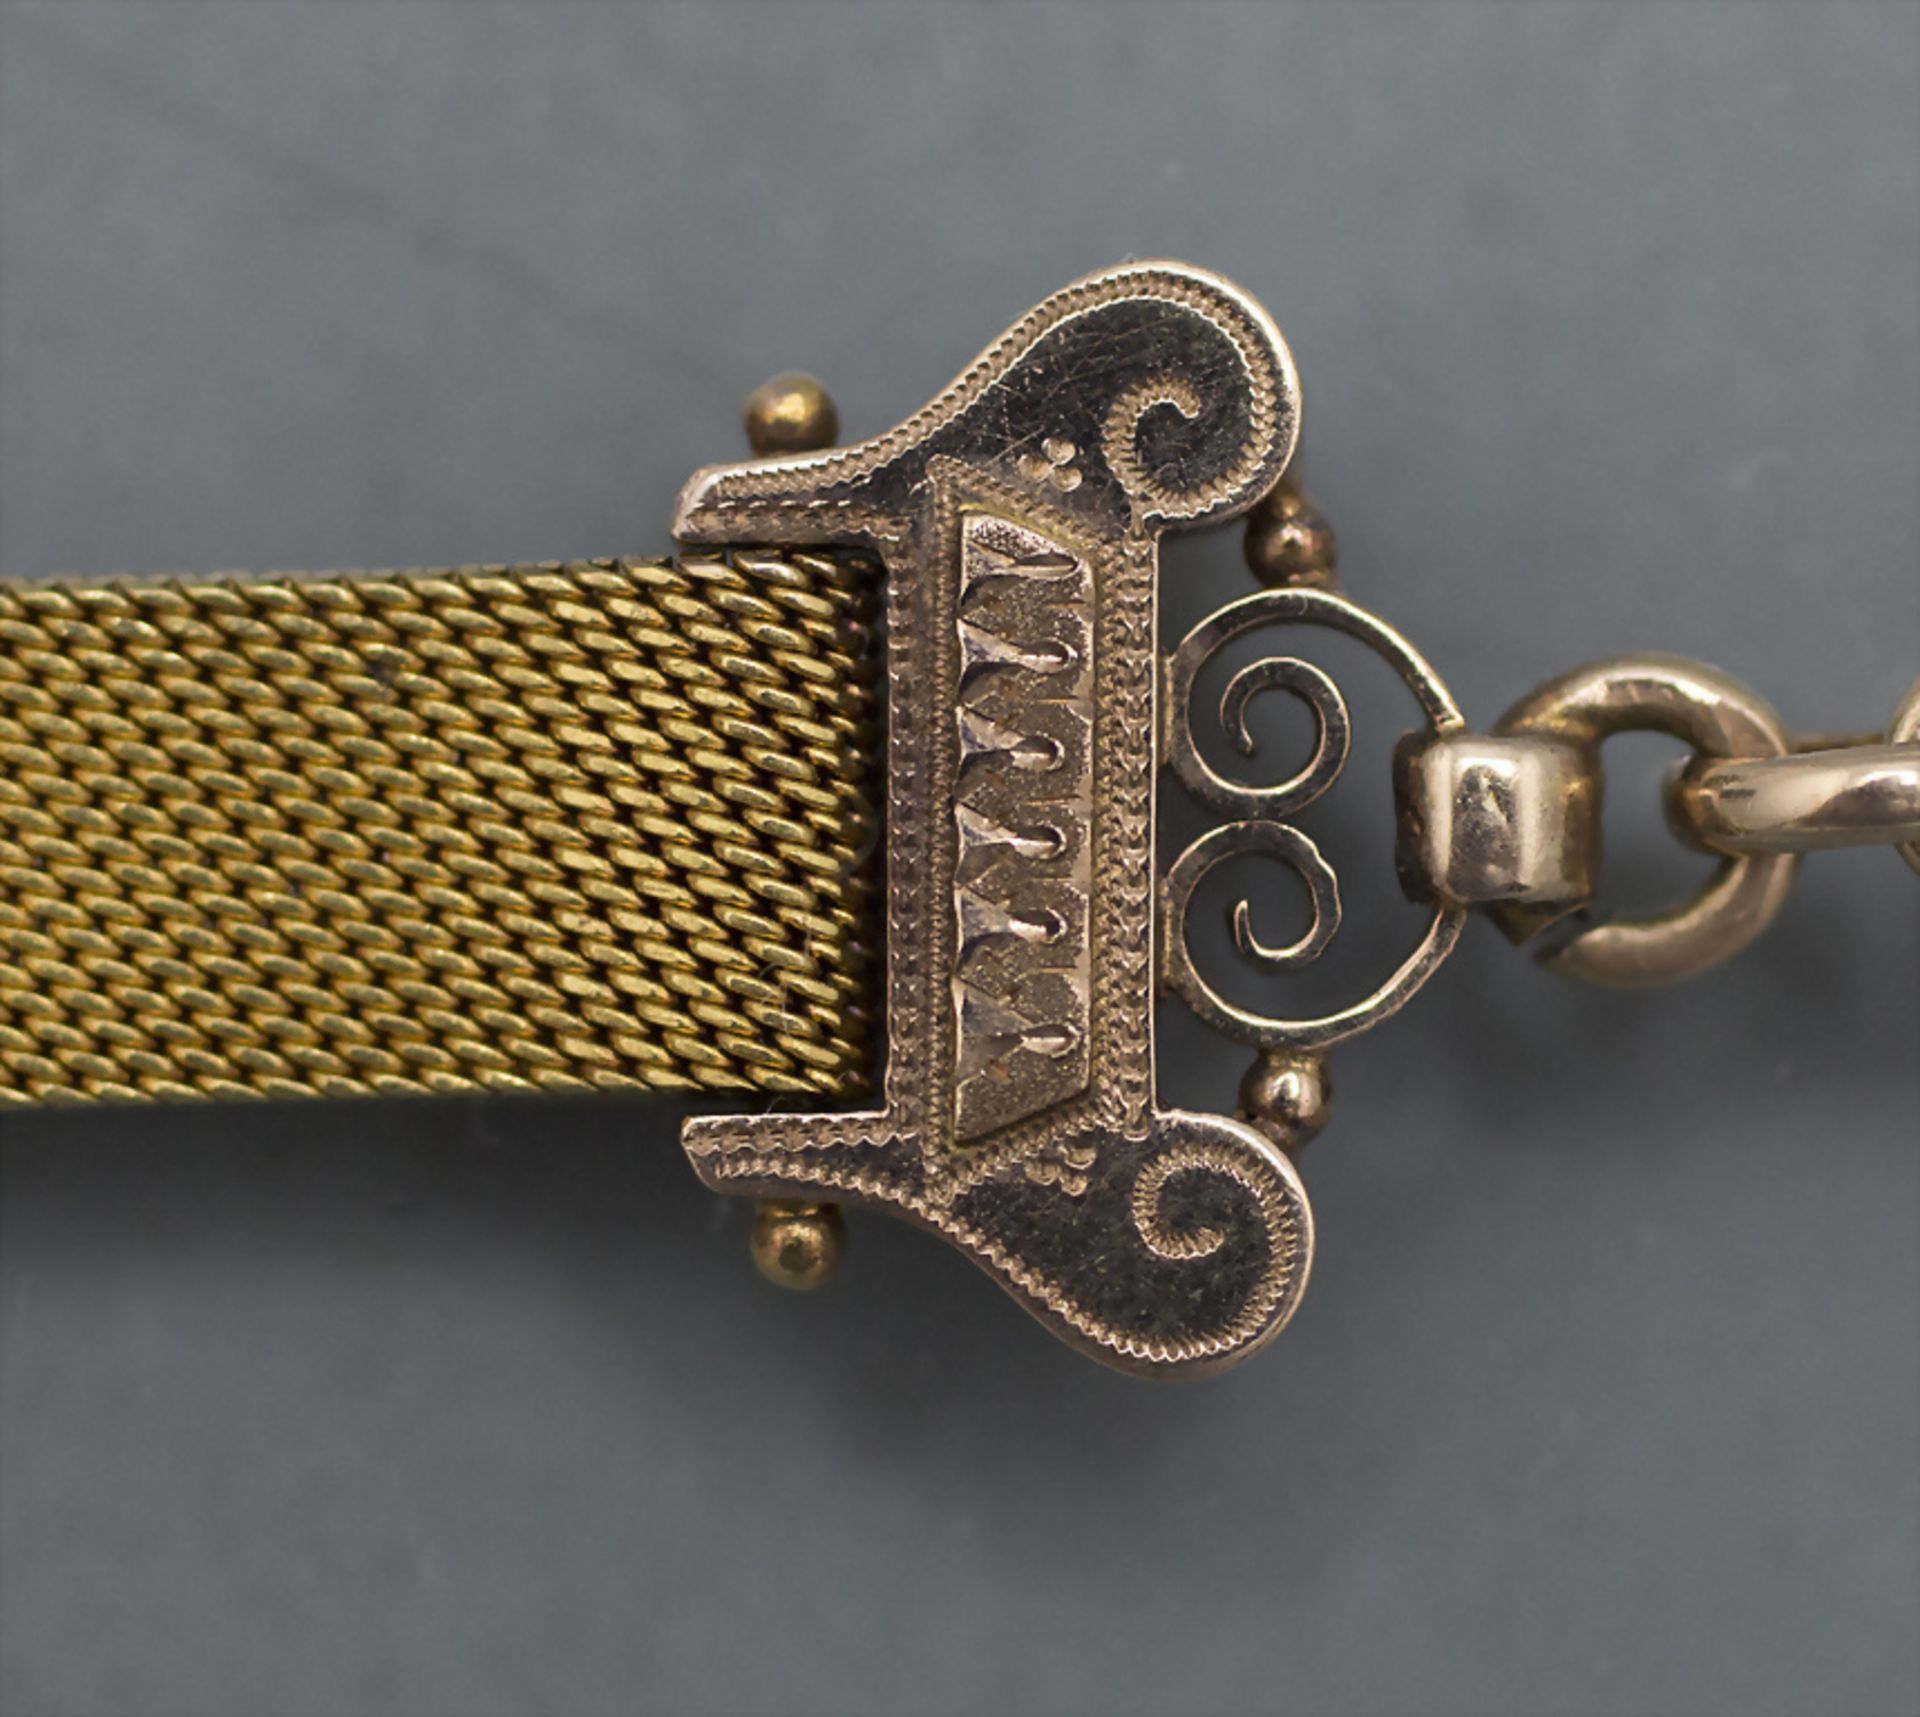 Chatelaine / Uhrenkette in Gold / A 14 ct gold watch chain, 19. Jh. - Bild 3 aus 6